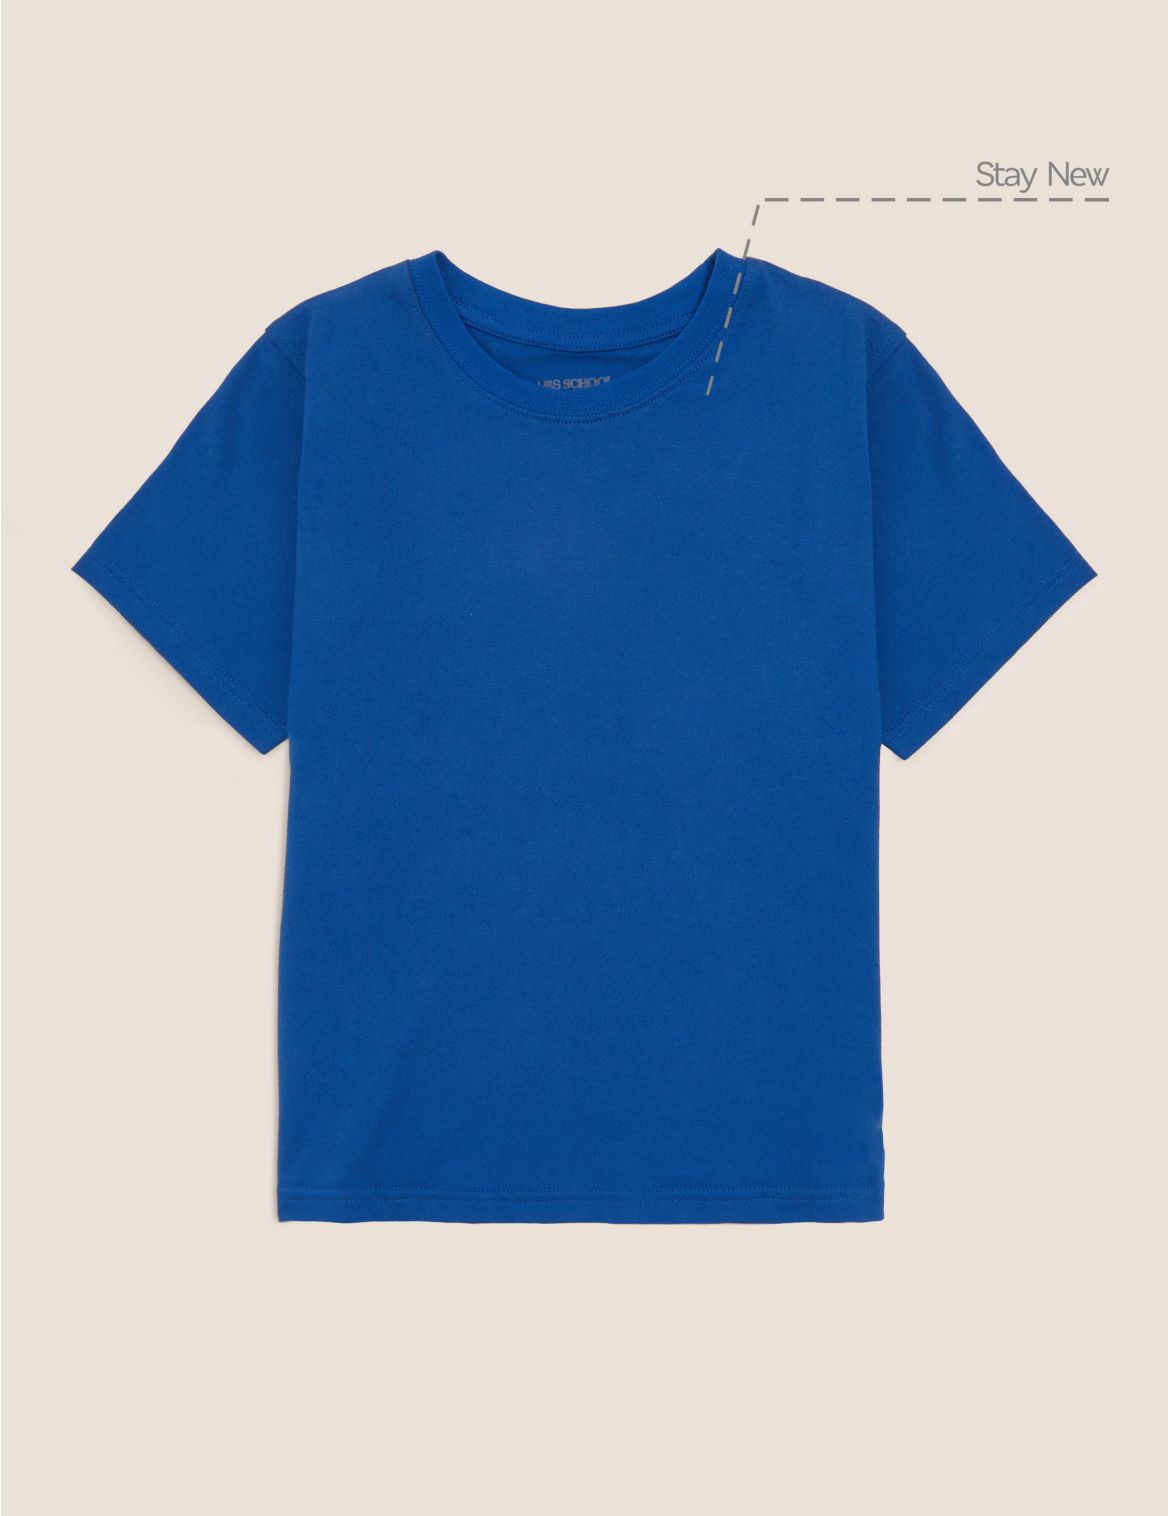 Unisex Pure Cotton T-Shirt blue